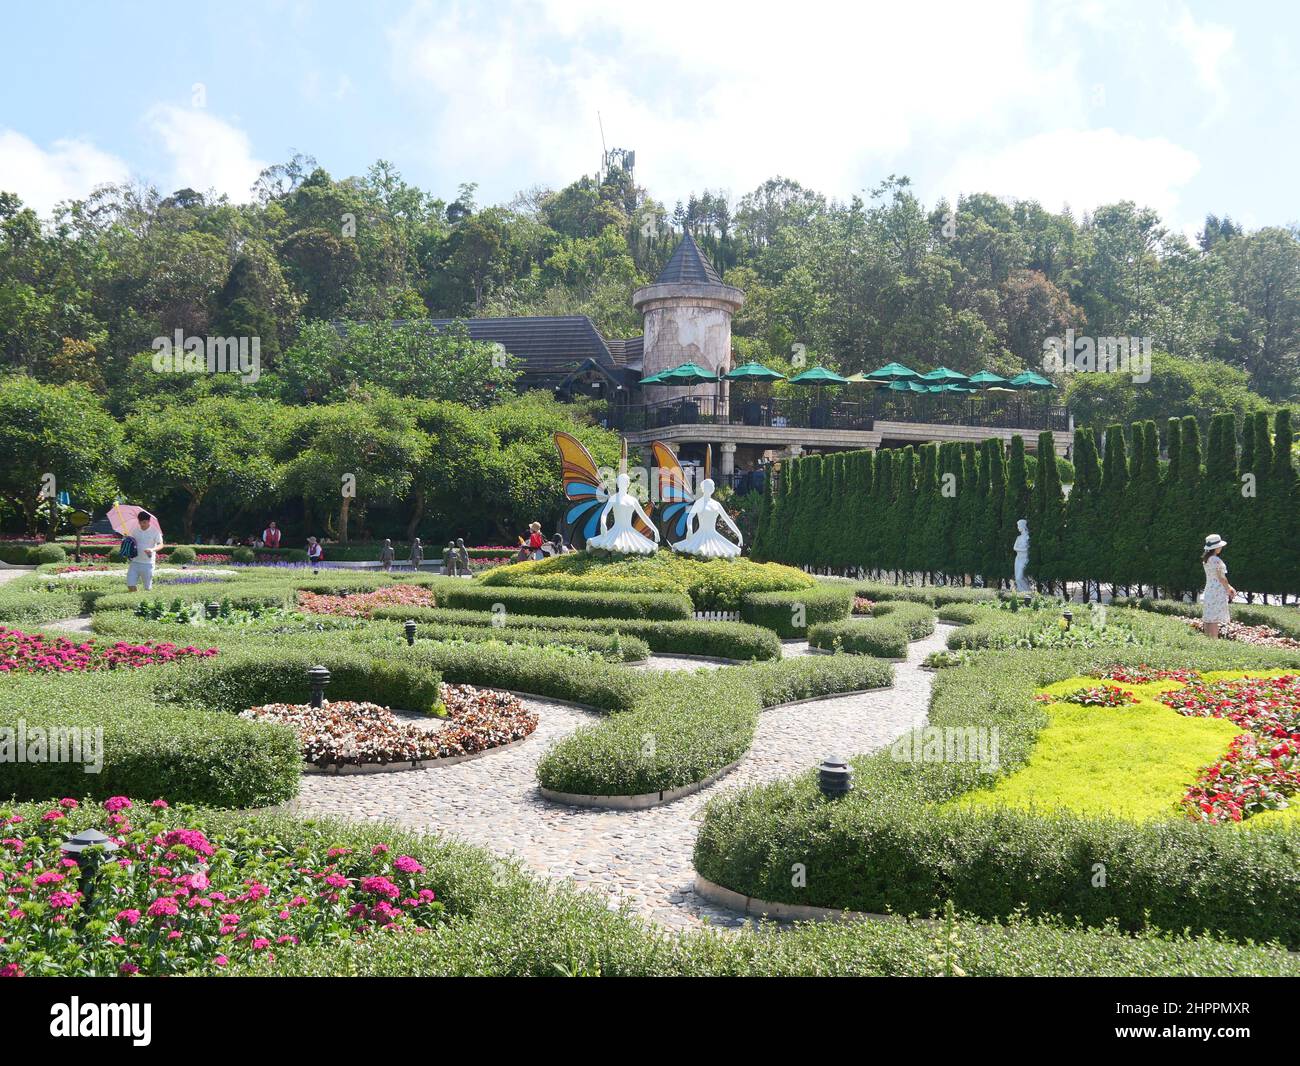 Da Nang, Vietnam - 12 avril 2021 : touristes dans le jardin des fleurs et des statues des collines de Ba Na, un célèbre parc à thème et station balnéaire dans le centre du Vietnam Banque D'Images